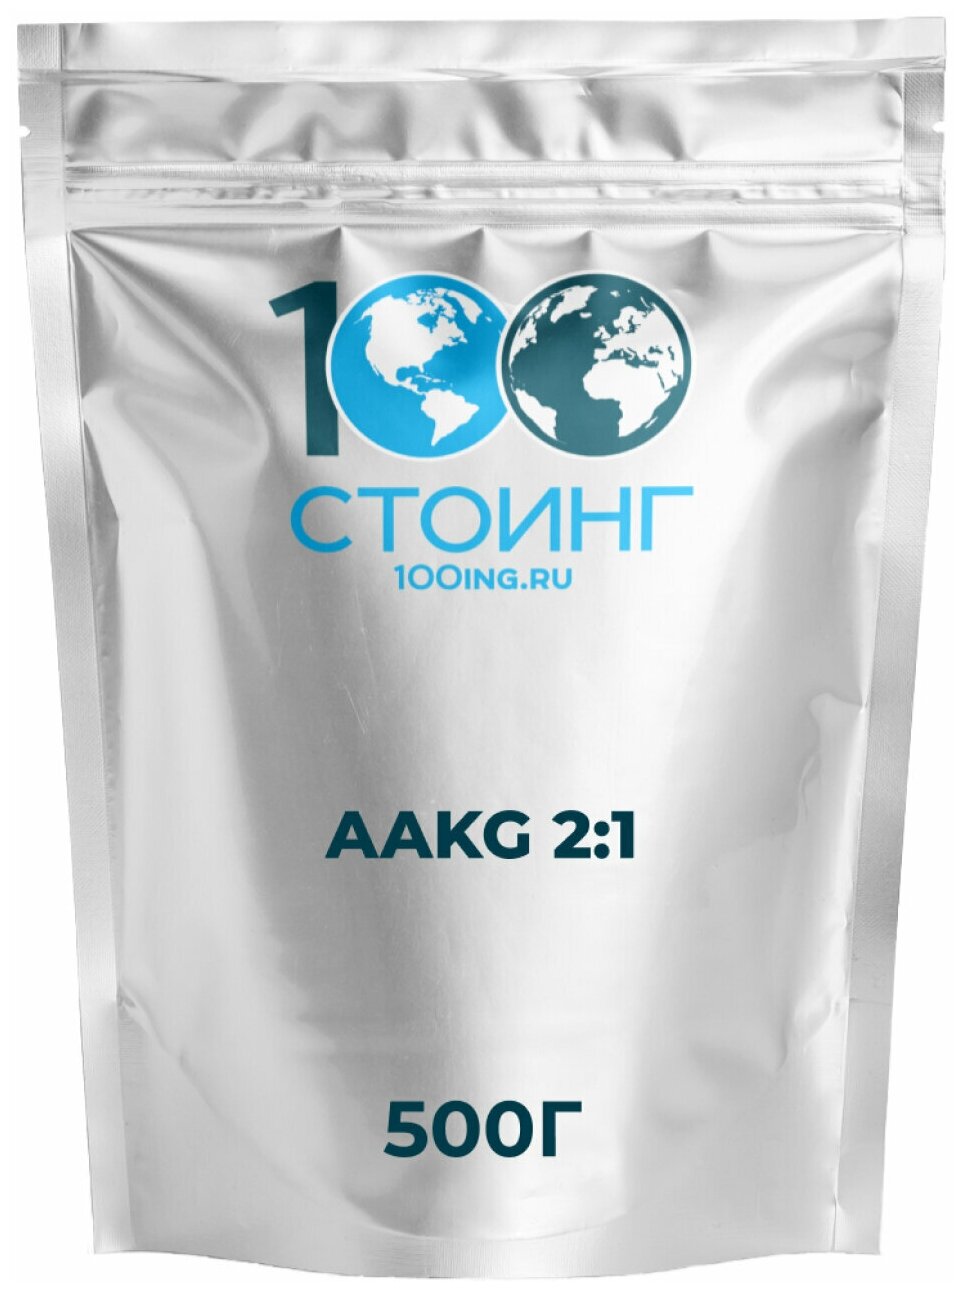 Аминокислота AAKG 2:1 Аргинин альфа-кетоглутарат аакг АКГ 500 гр стоинг / STOING